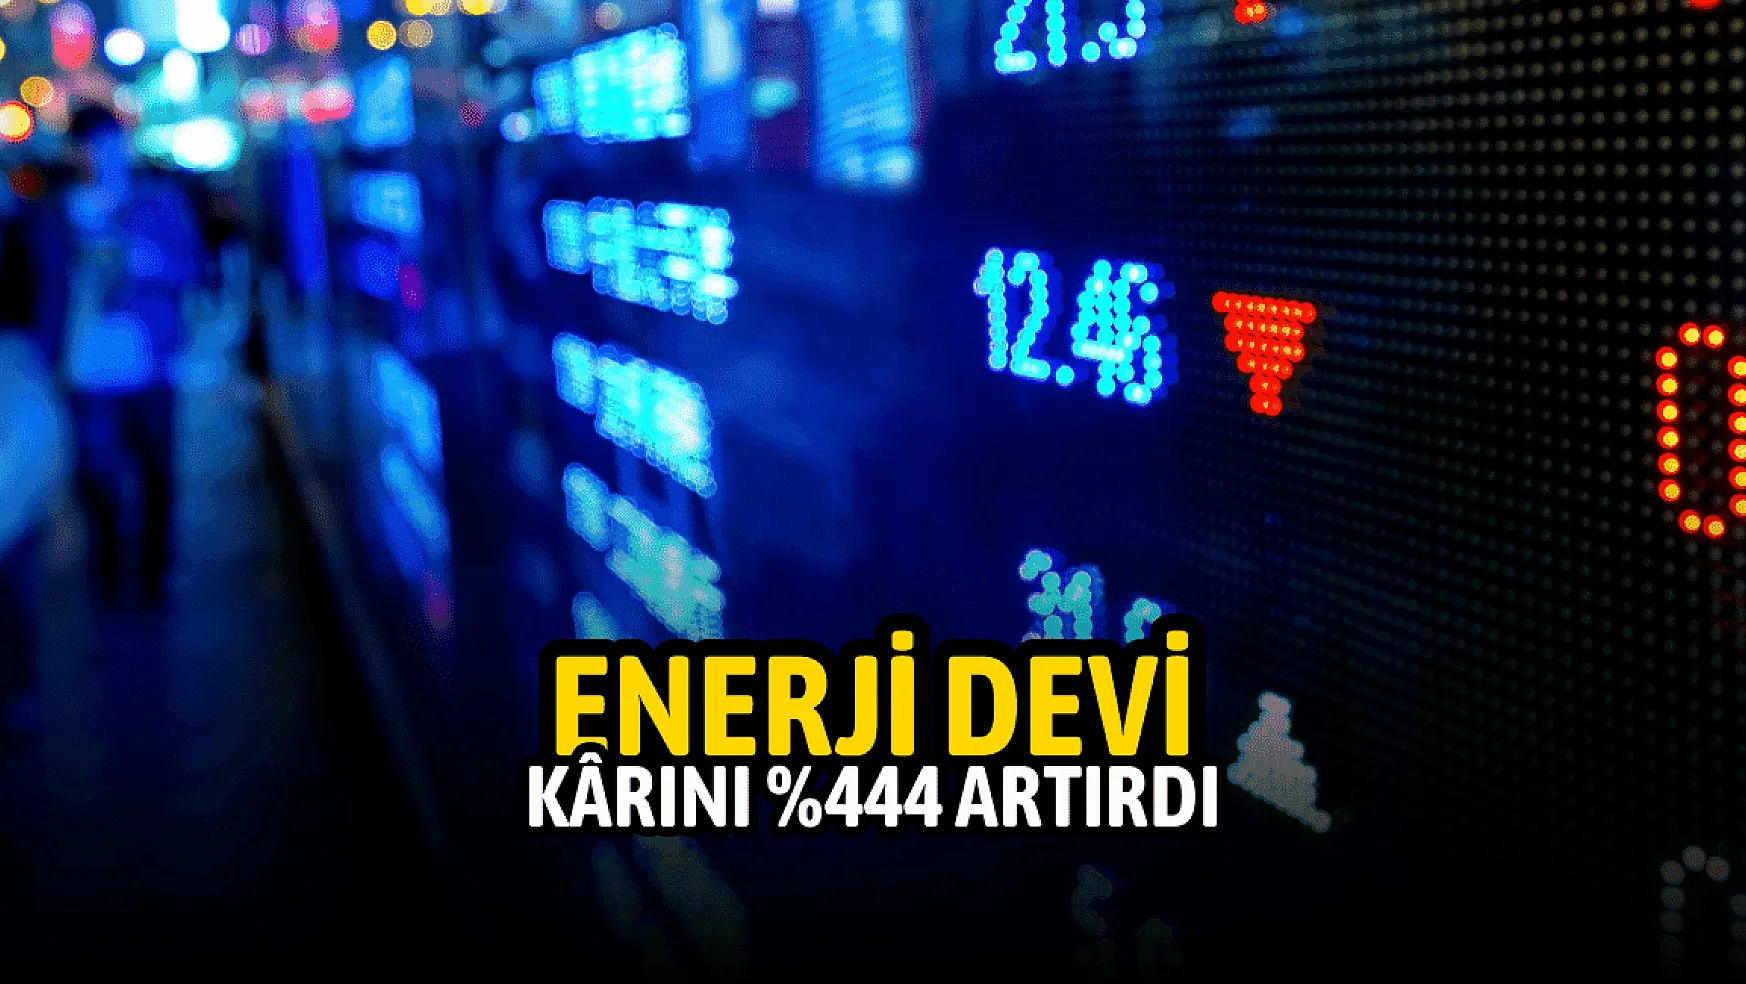 Türkiye'nin enerji devi 12.930.885.000 TL net kâr açıkladı!